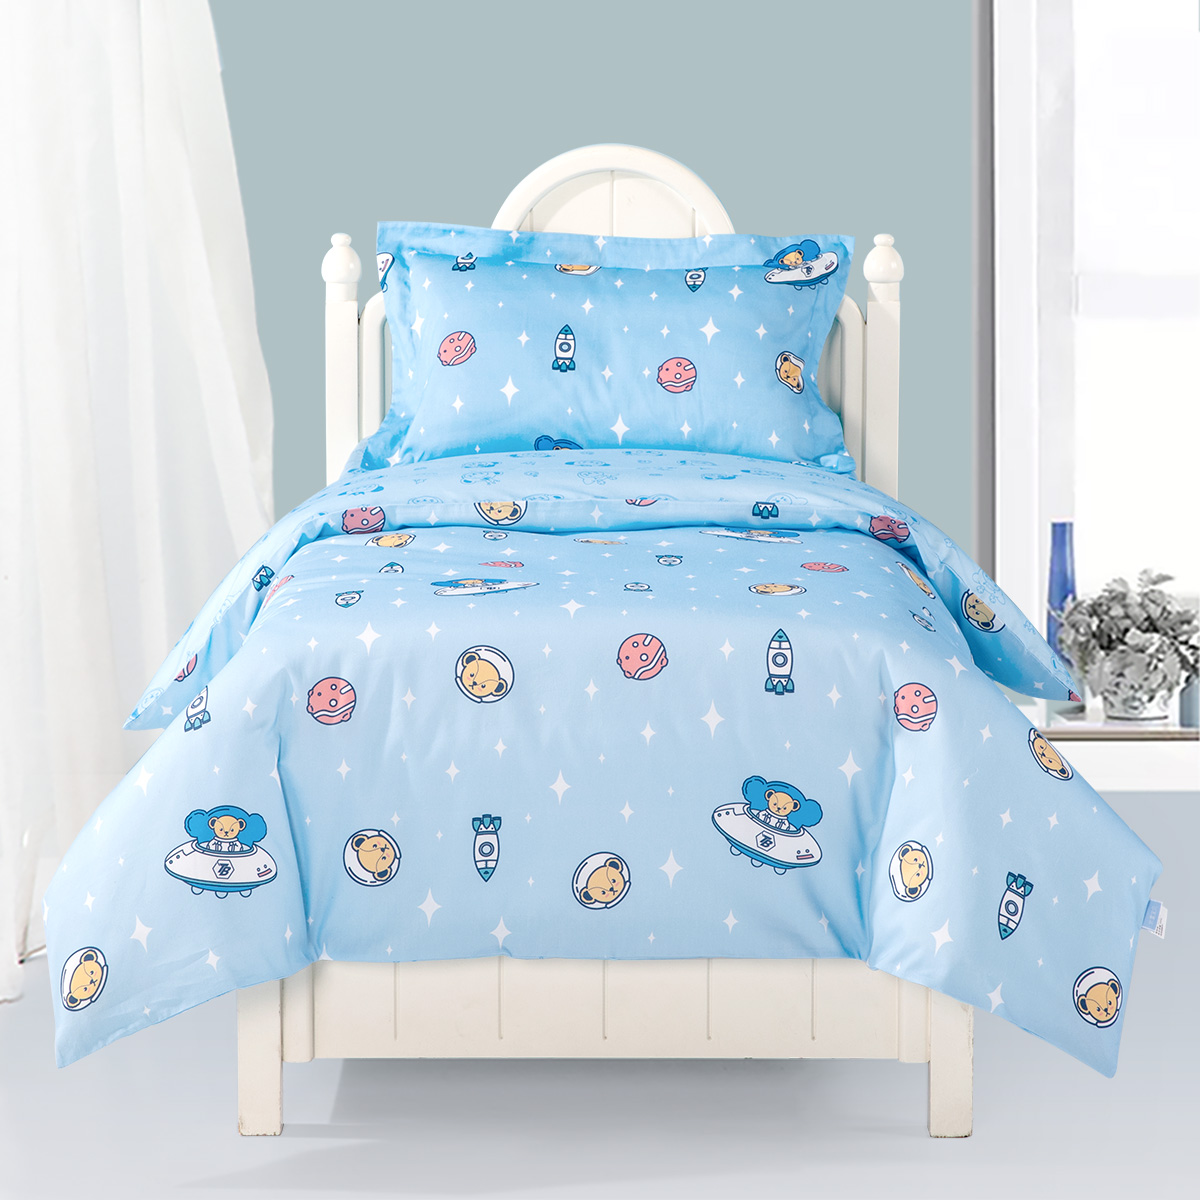 水星宝贝宝宝幼儿园被子三件套四五儿童入园婴儿午睡被褥床上用品